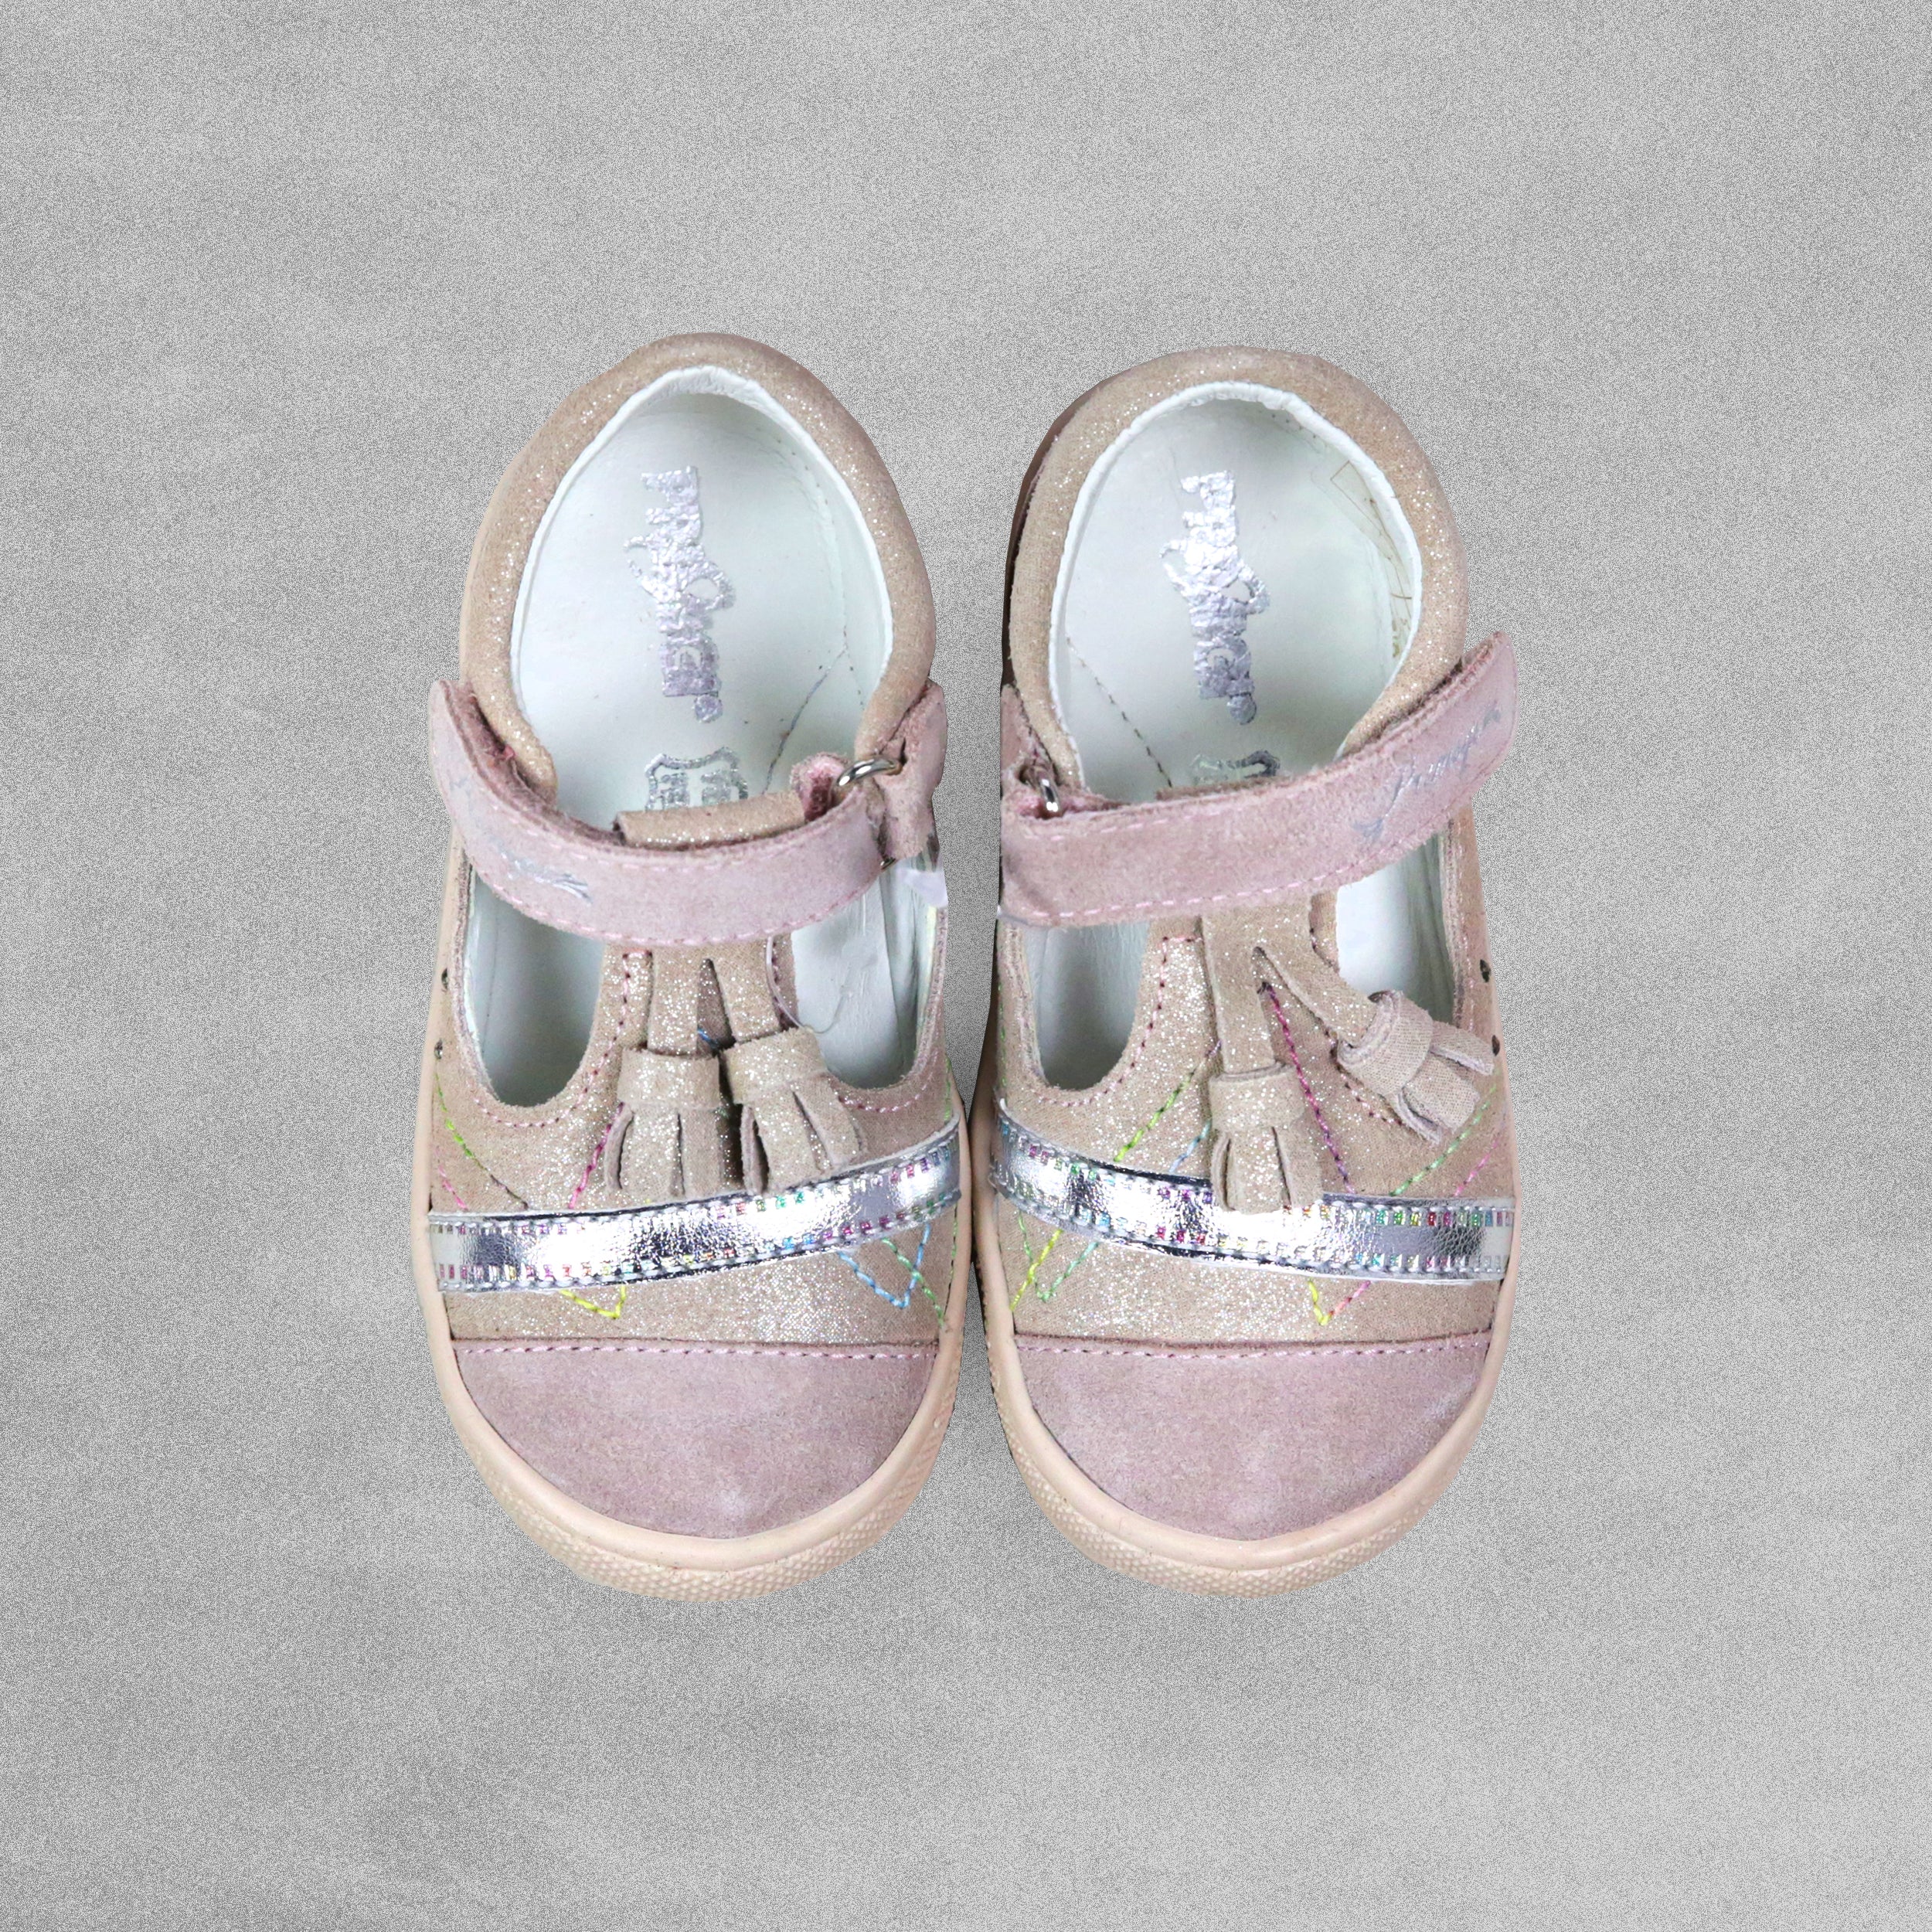 'Primigi'  Girls Pink Mary Jane Shoes - UK Child Size 6 / EU 23